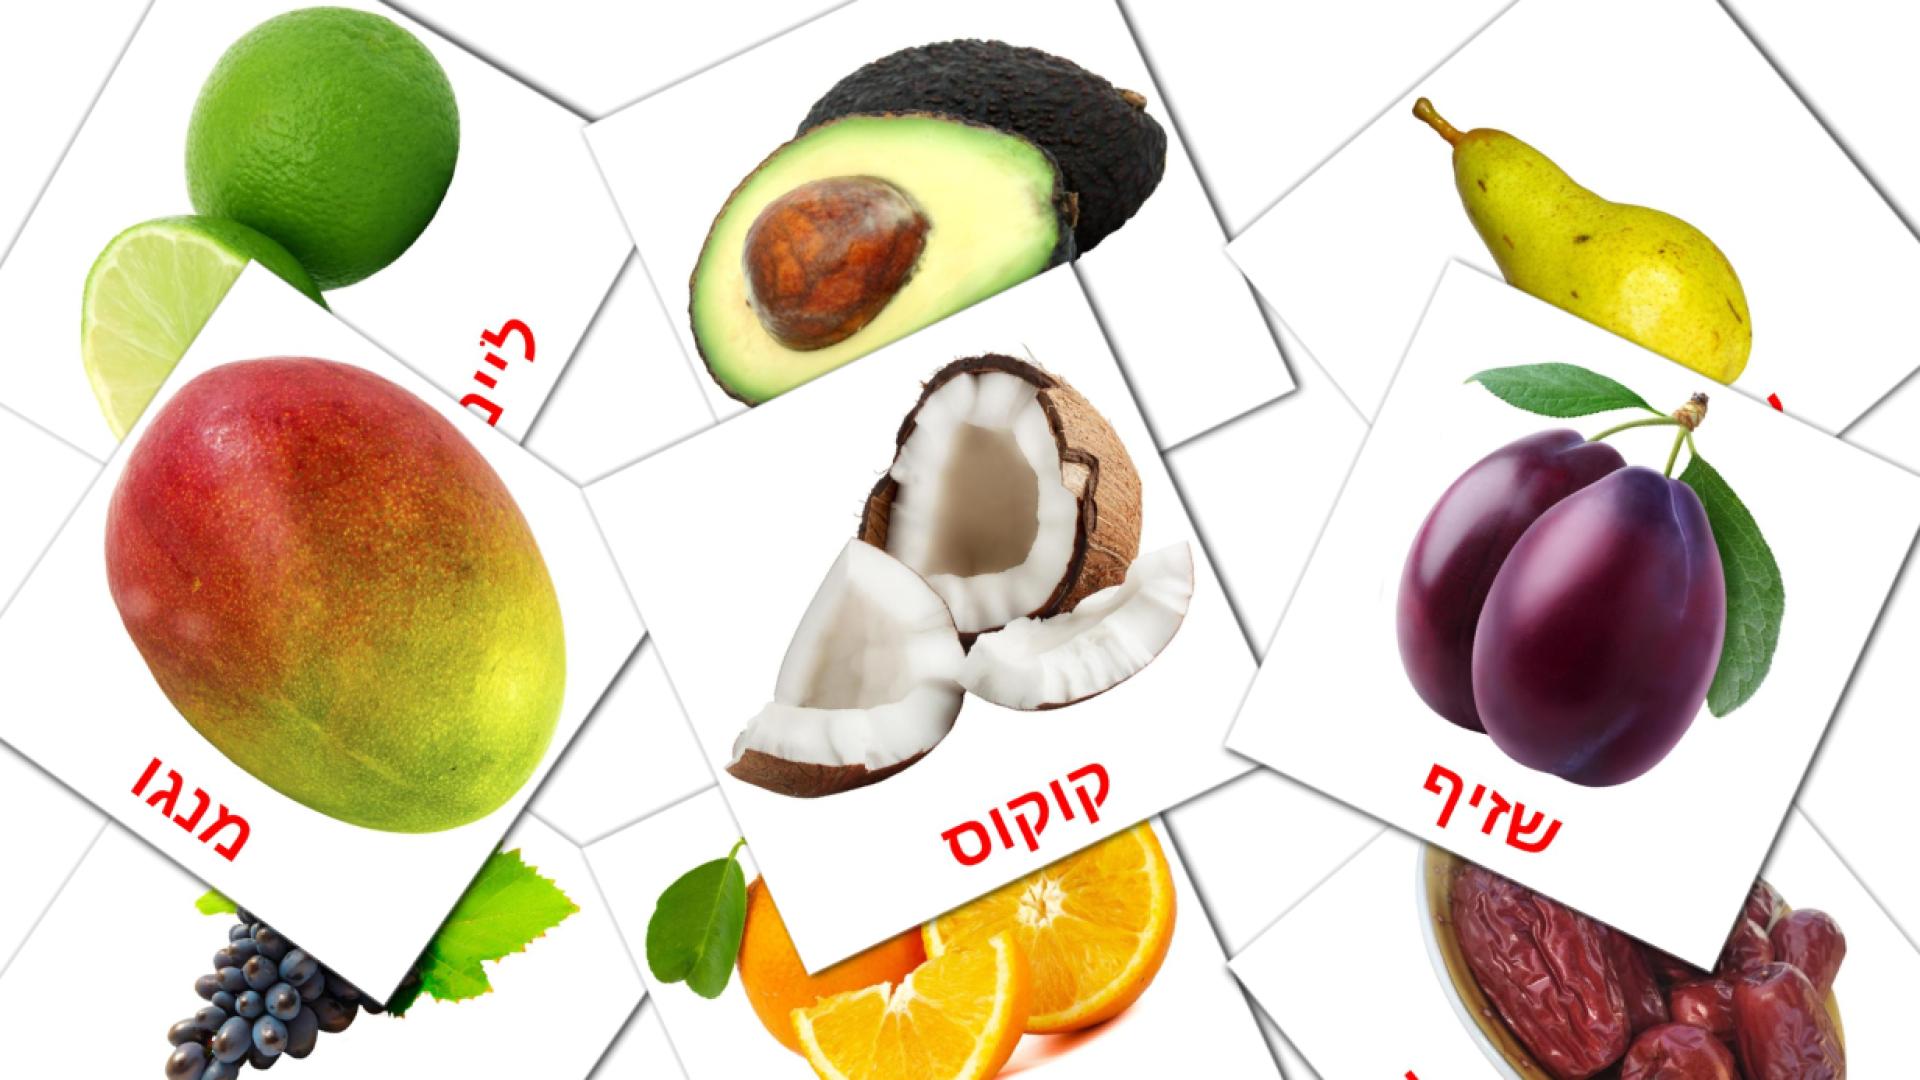 20 Bildkarten für פירות